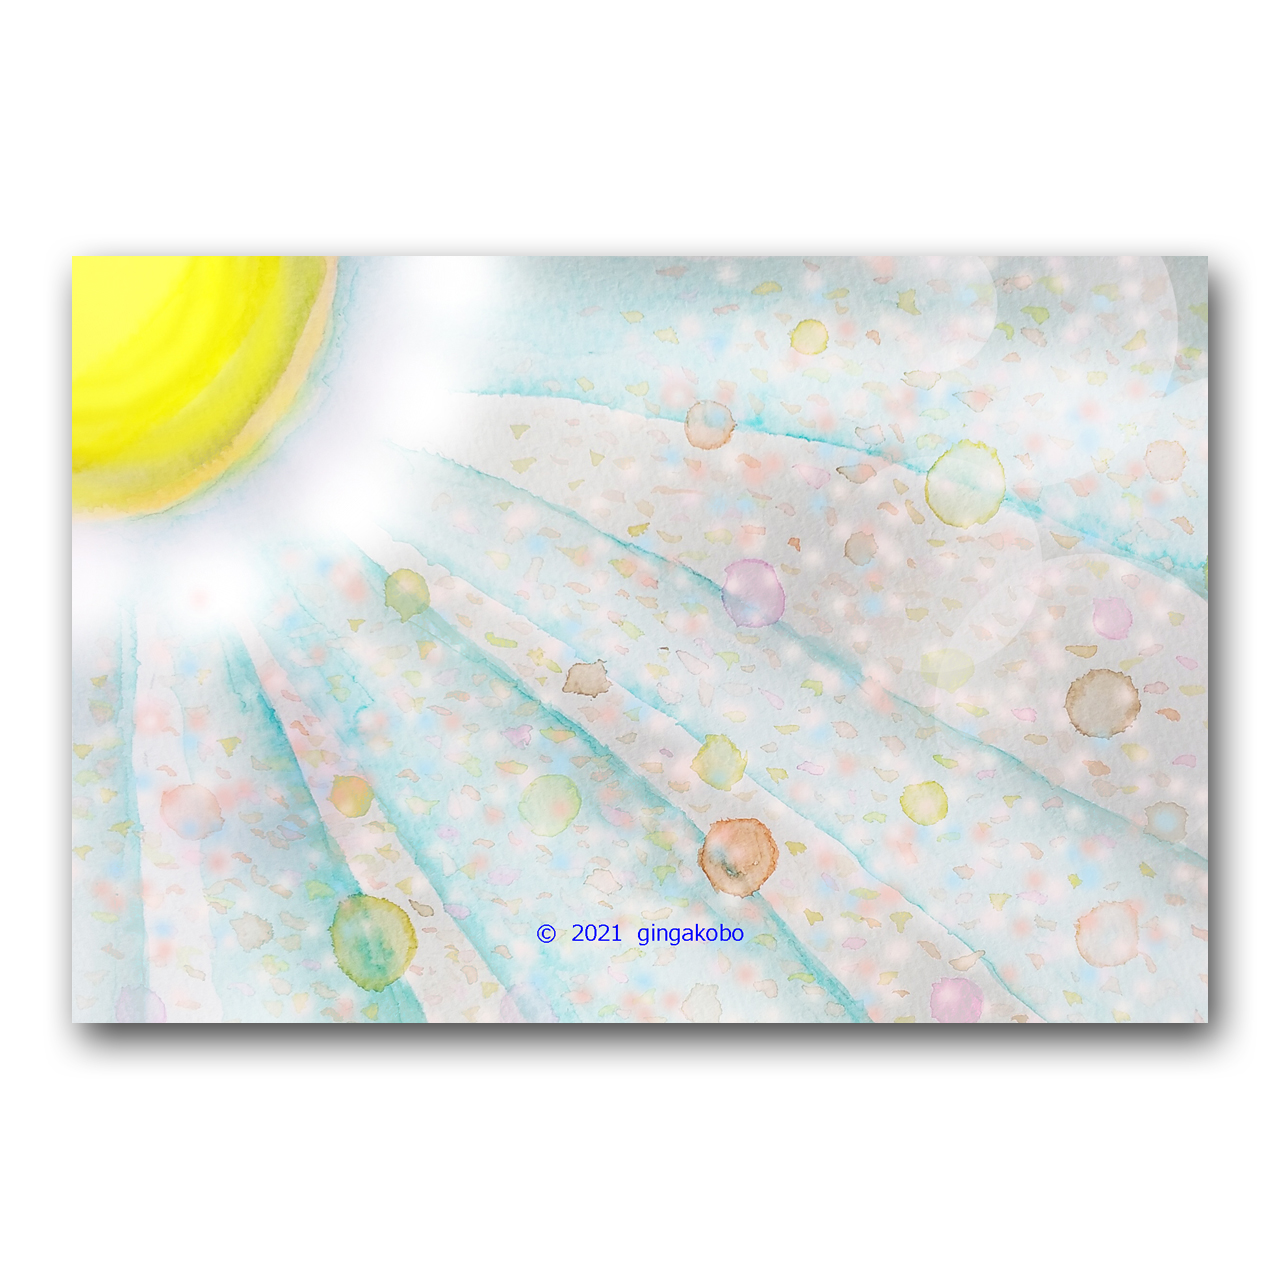 お日様のフレアが教えてくれた 太陽 ほっこり癒しのイラストポストカード2枚組 No 1330 Iichi ハンドメイド クラフト作品 手仕事品の通販